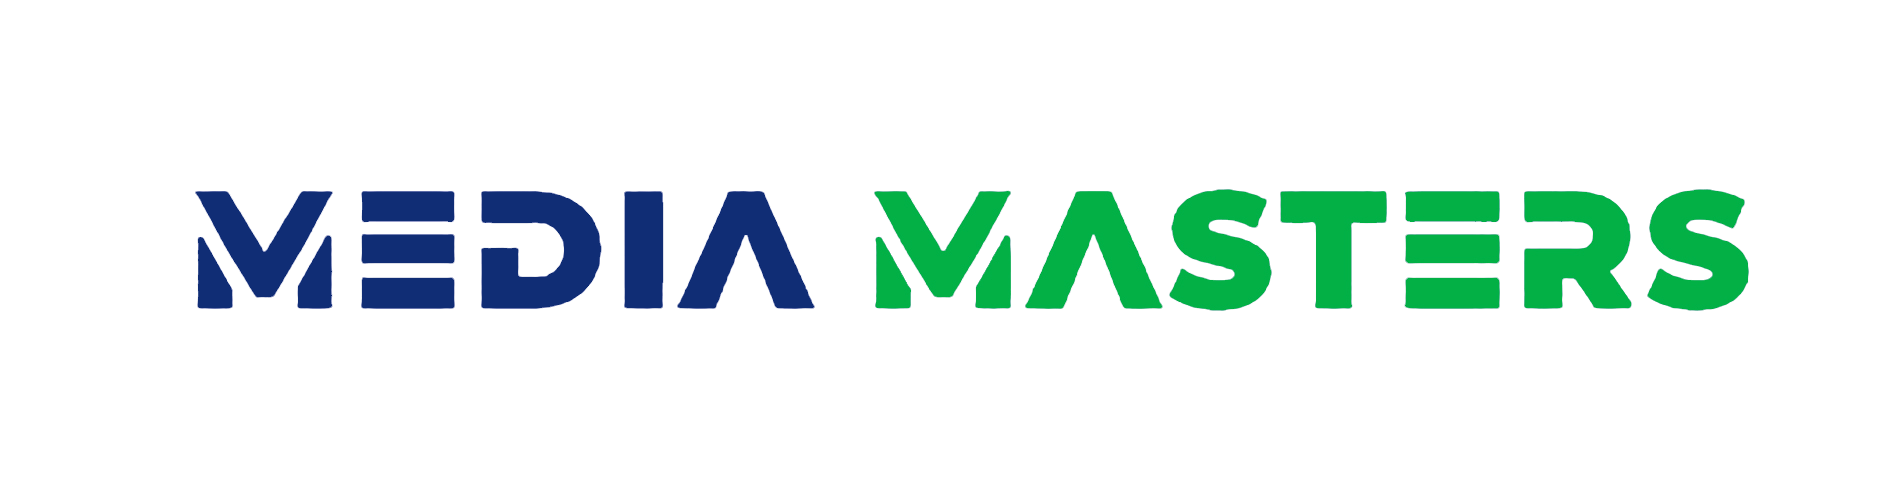 Company logo of Media Masters.